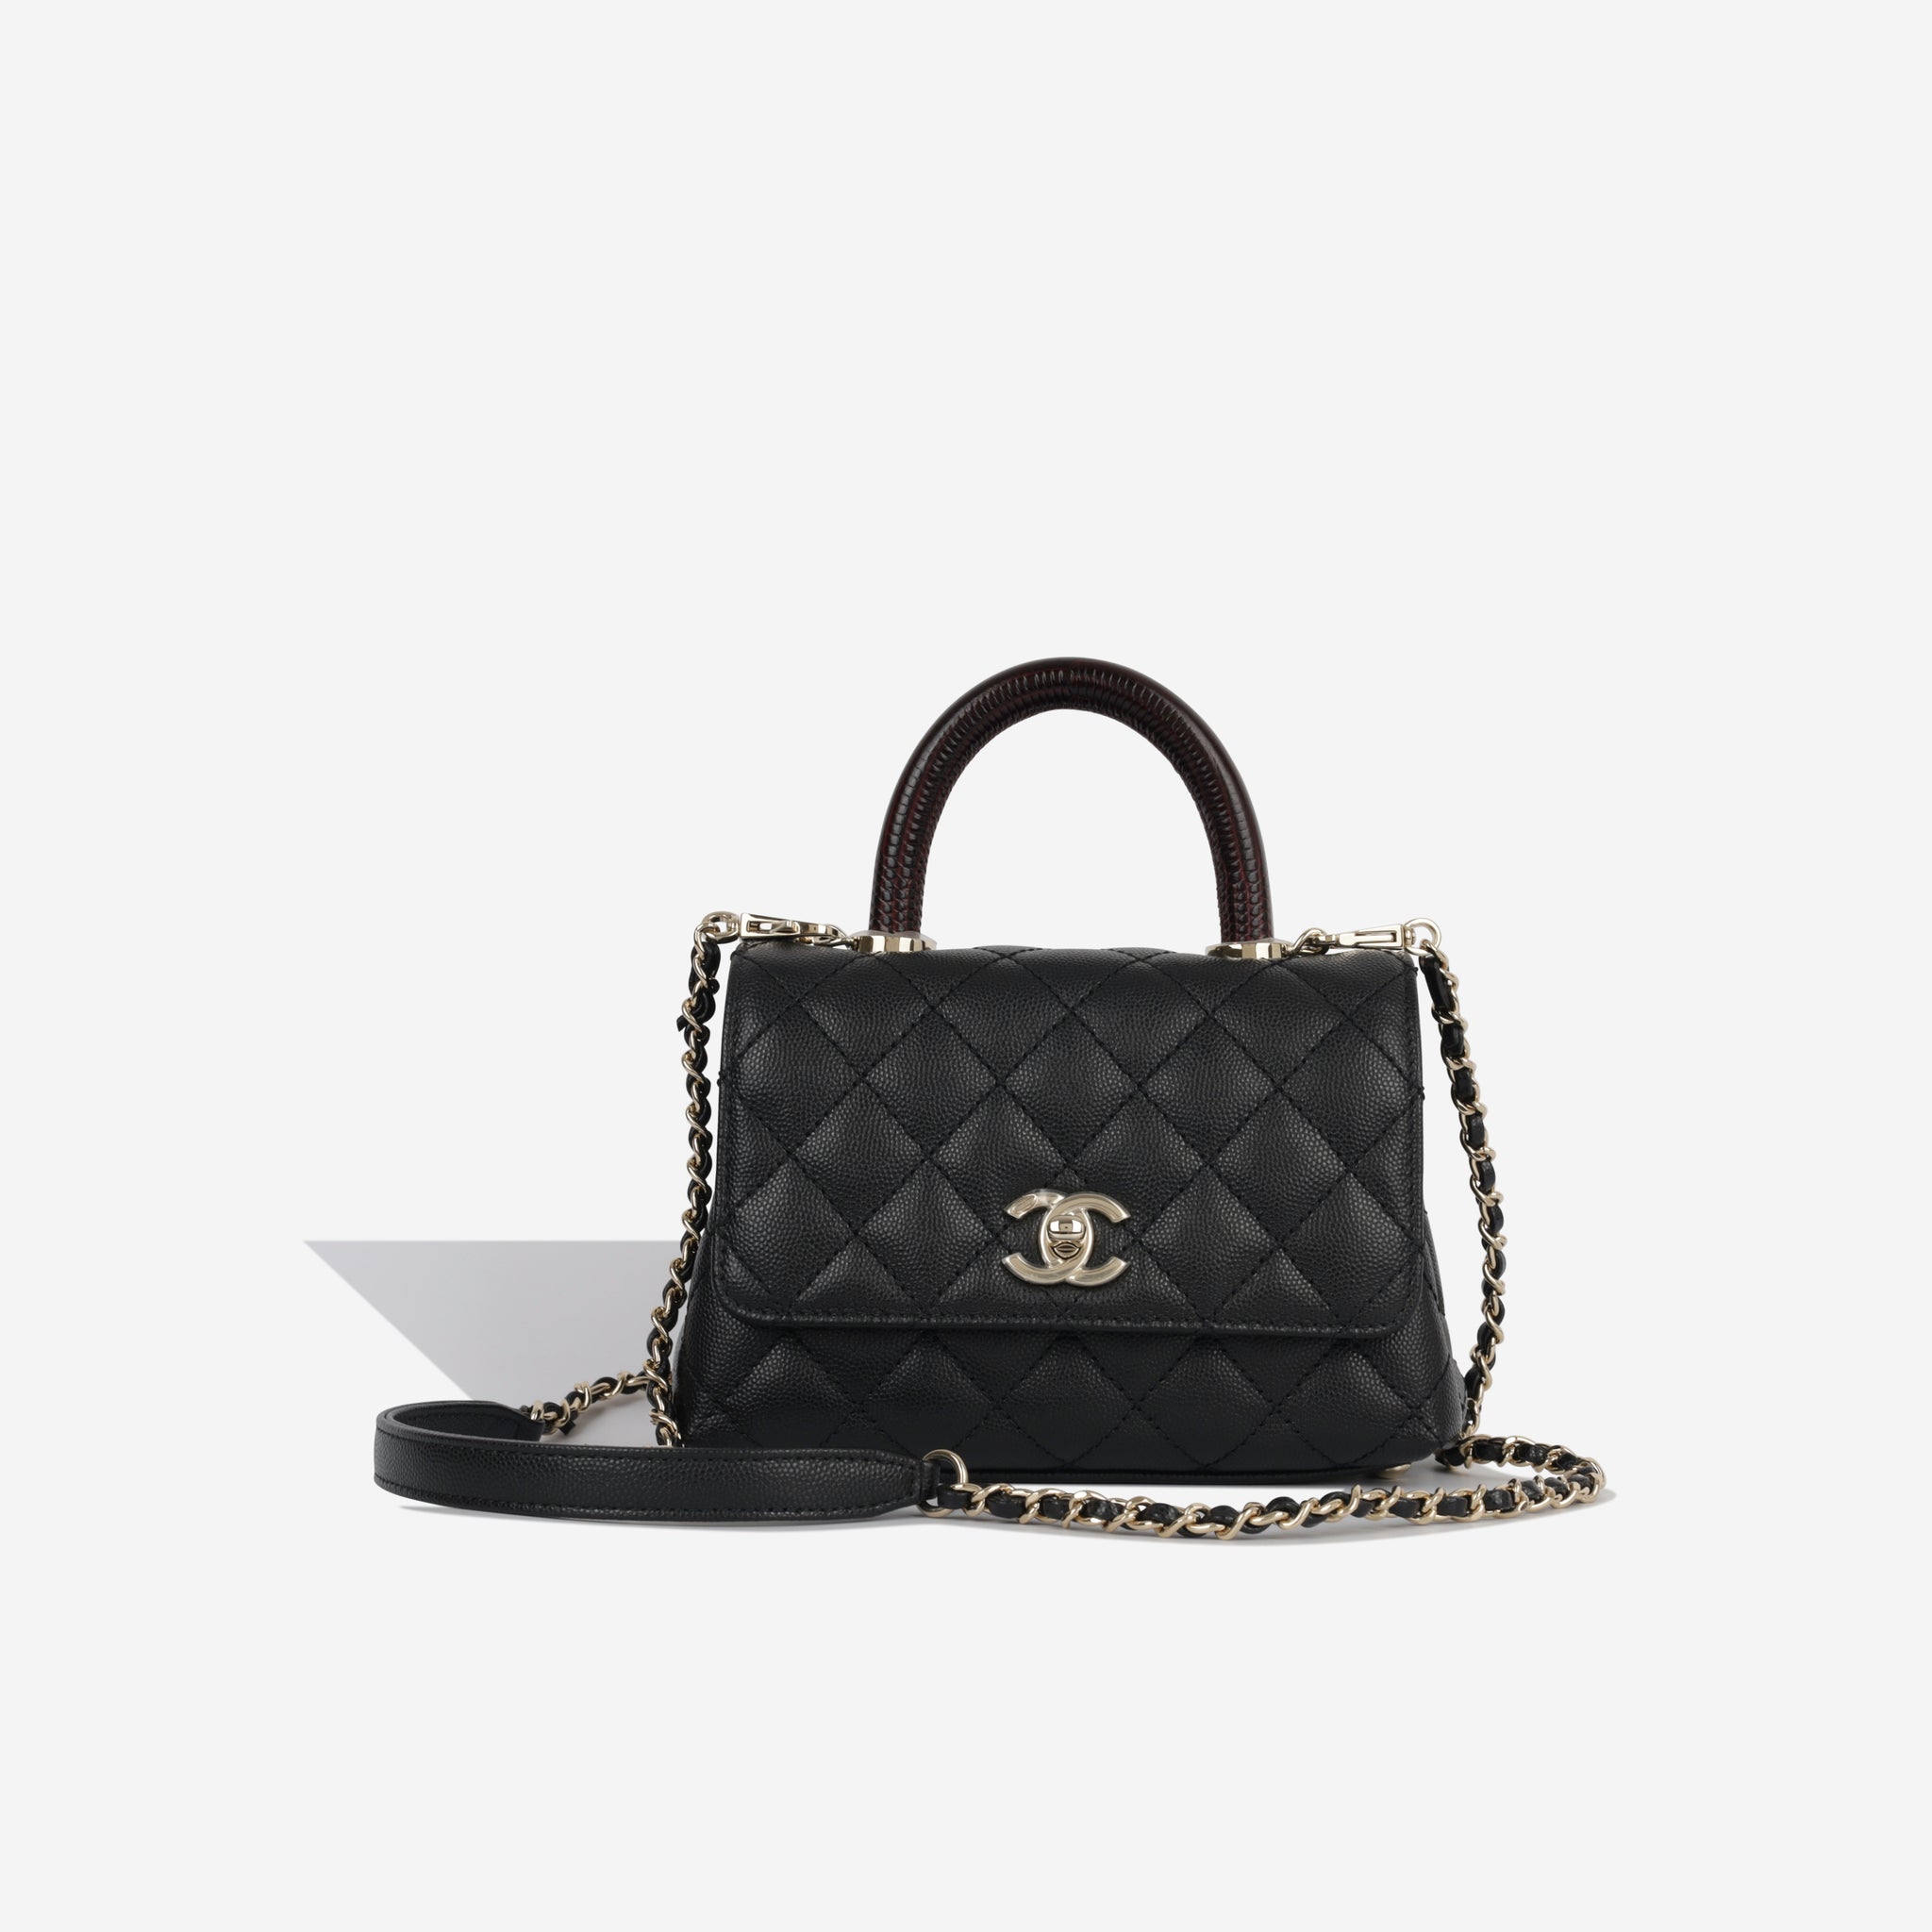 Chanel - Coco Handle Mini - Black Caviar - CGHW - Brand New